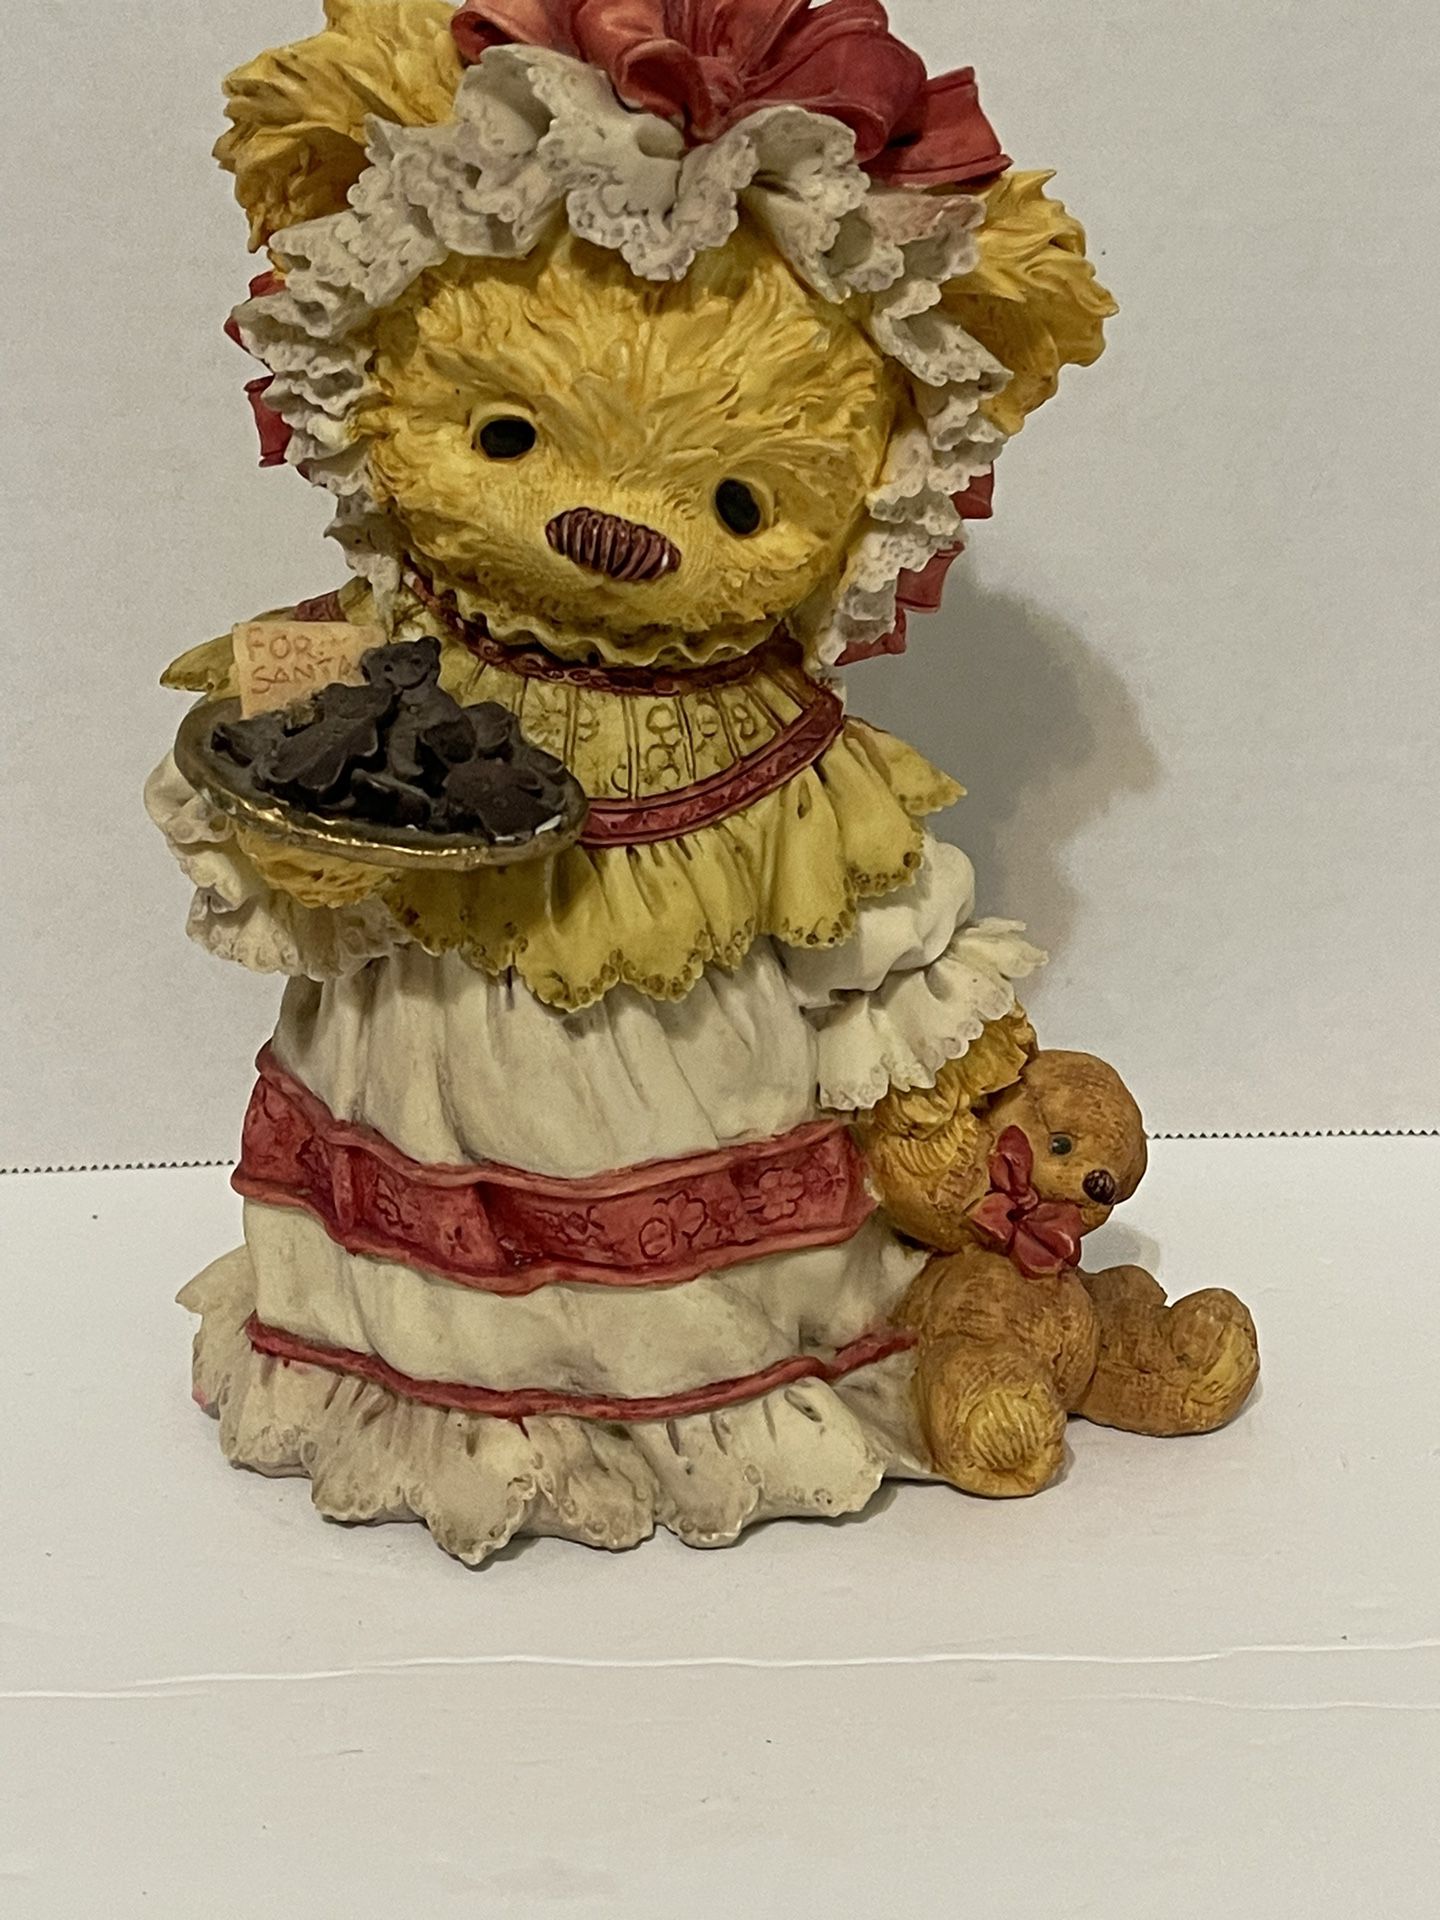 Small resin teddy bear figurine.  